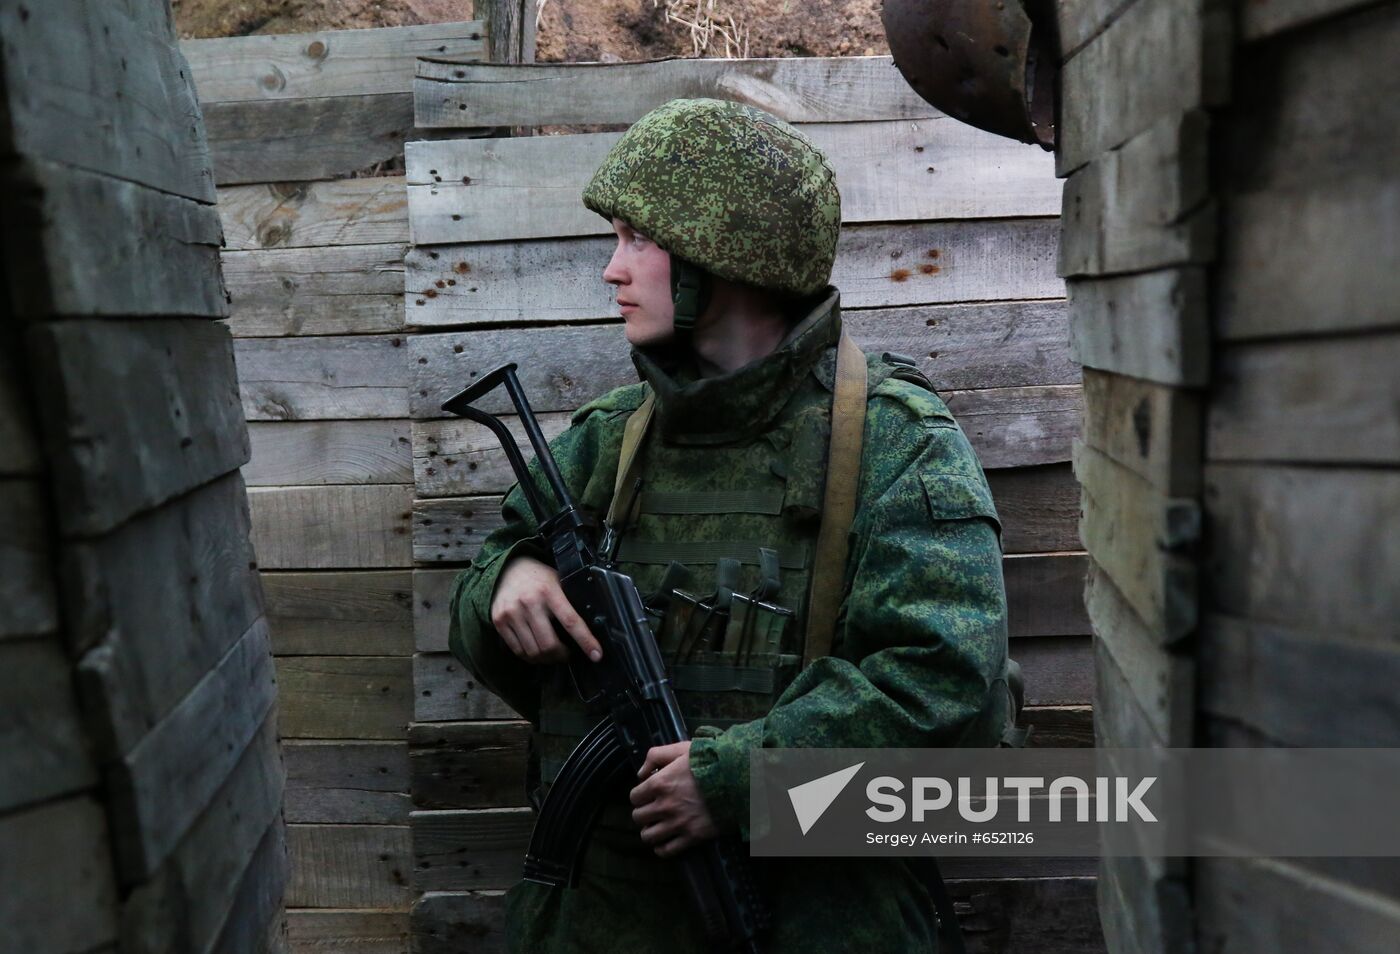 Ukraine DPR Militia